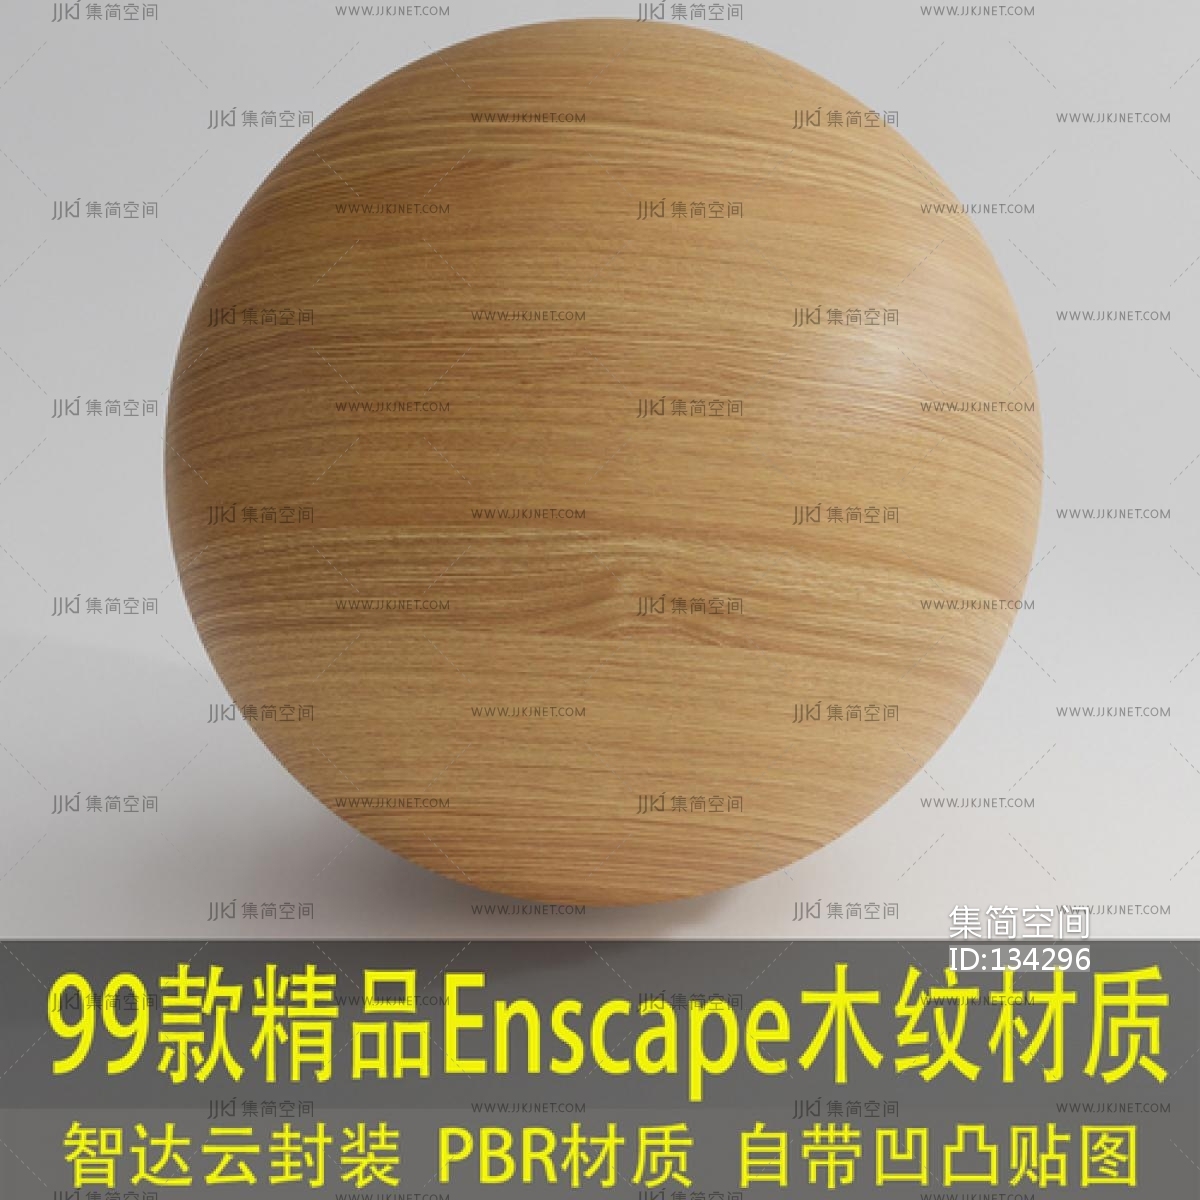 99款精品木纹材质球，Enscape格式，自带凹凸贴图，可直接导入